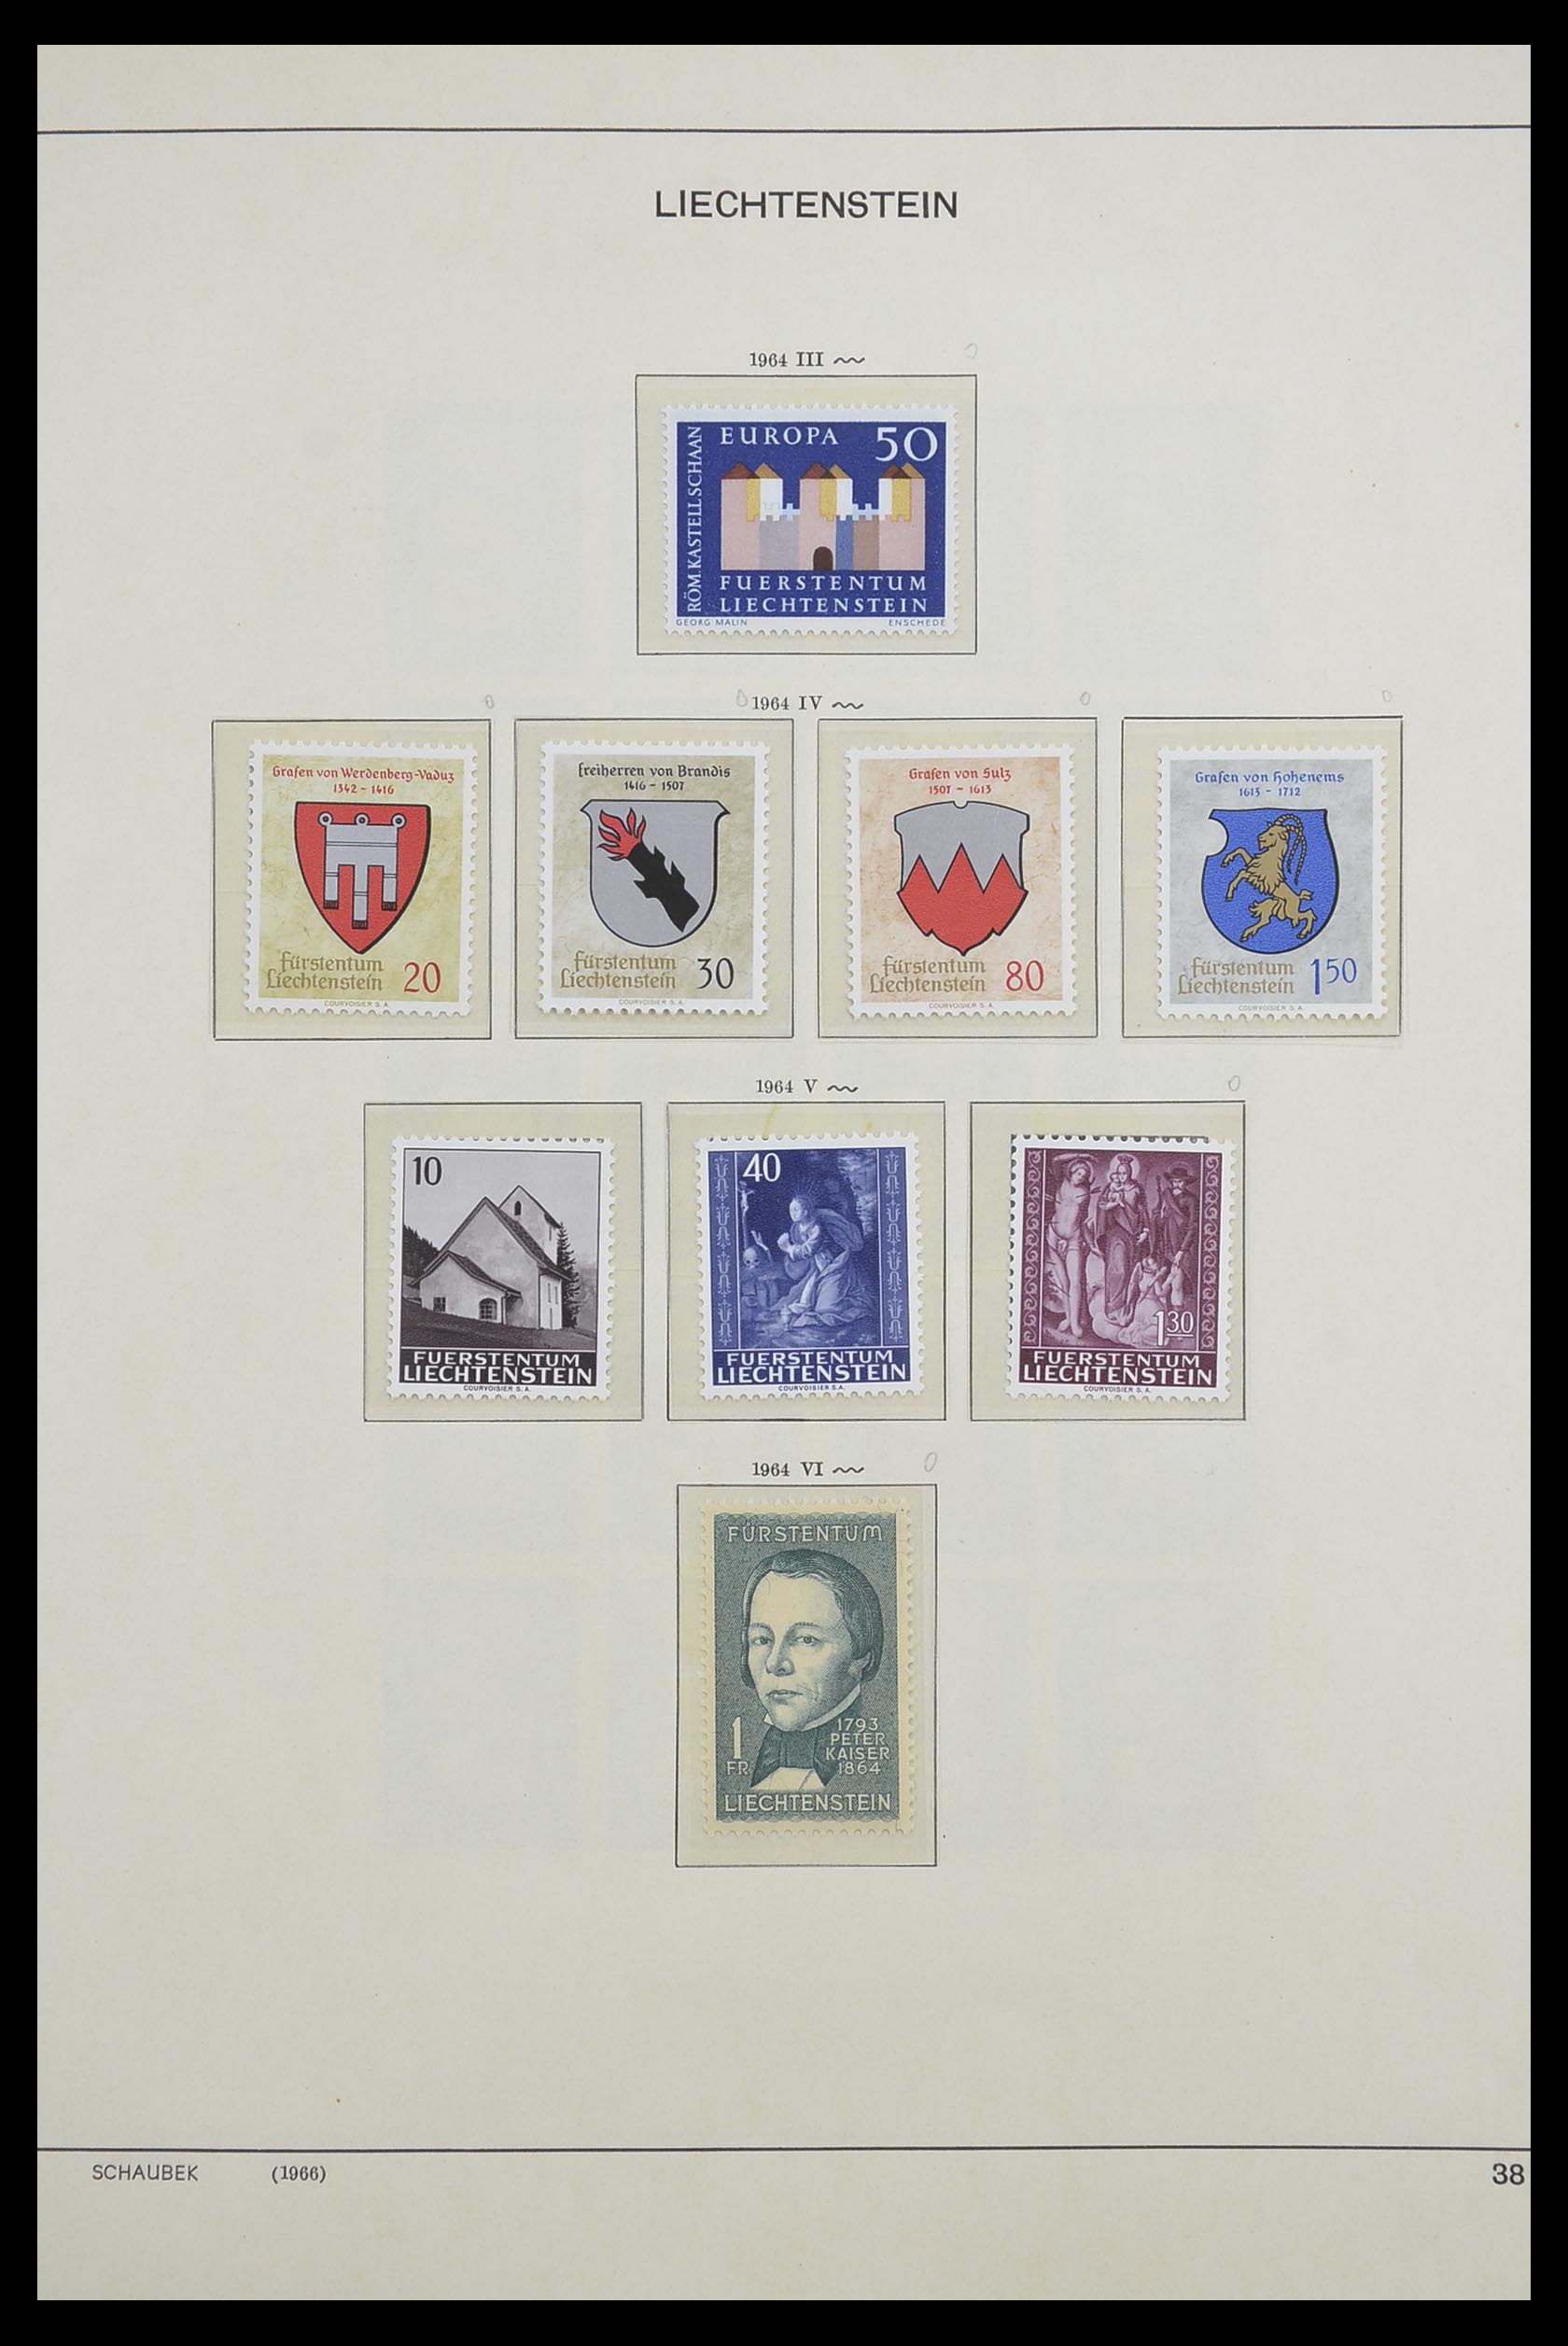 33274 040 - Stamp collection 33274 Liechtenstein 1912-1996.